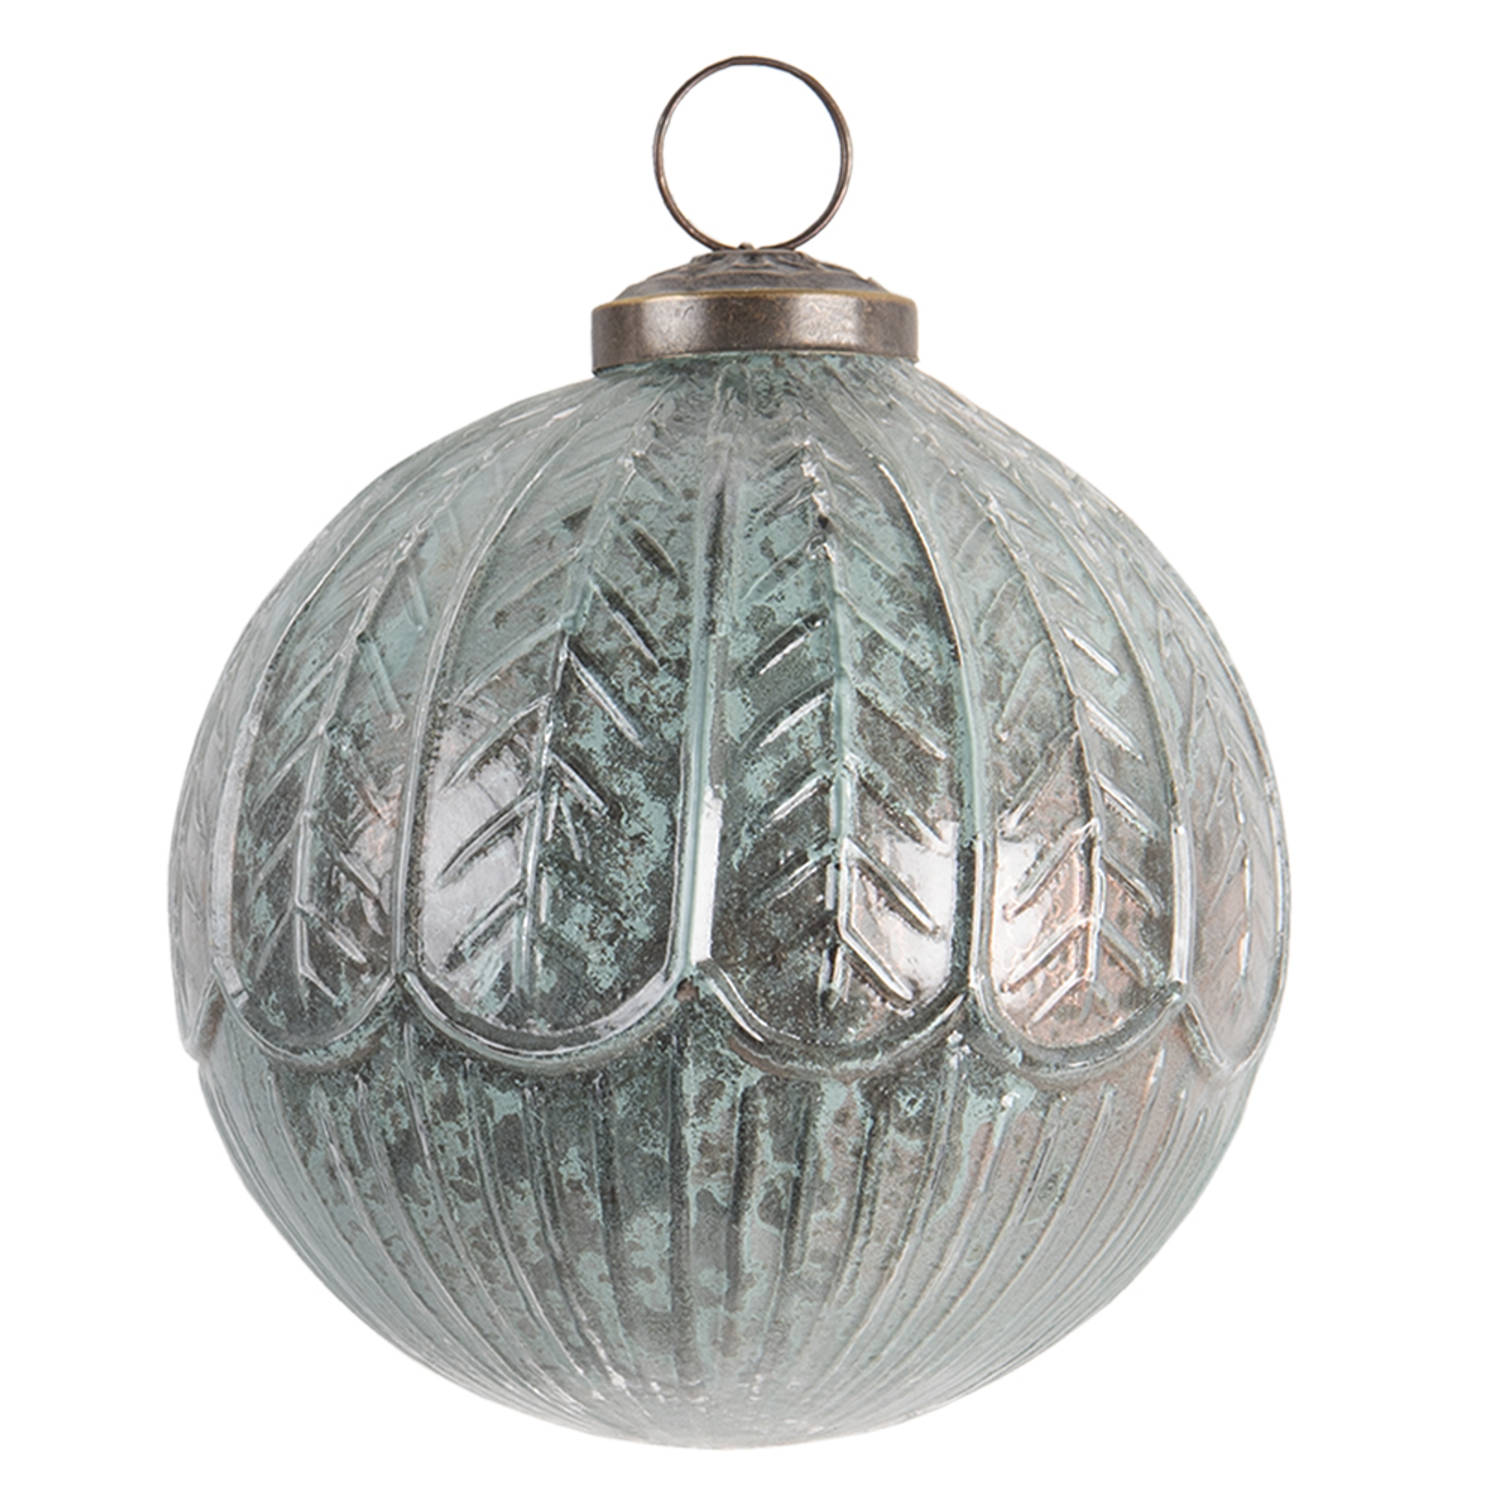 HAES DECO - Kerstbal - Formaat Ø 10x10 cm - Kleur Turquoise - Materiaal Glas - Kerstversiering, Kerstdecoratie, Decoratie Hanger, Kerstboomversiering